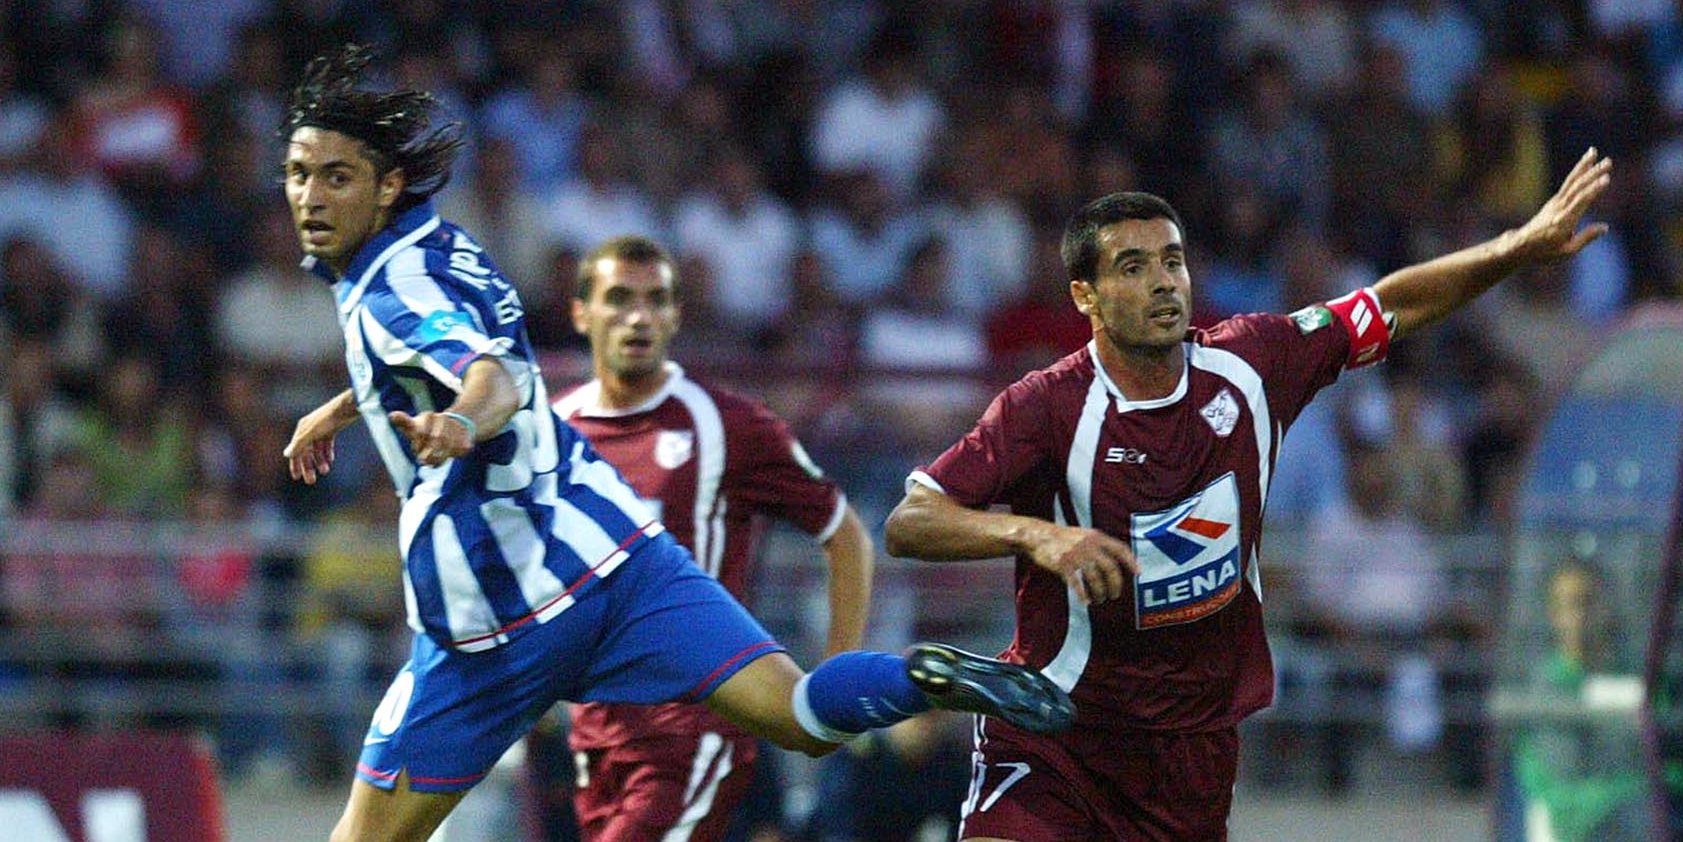 O avançado português fez apenas 45 minutos pela equipa principal do FC Porto, em 2007/08, numa partida da Taça da Liga contra o Fátima